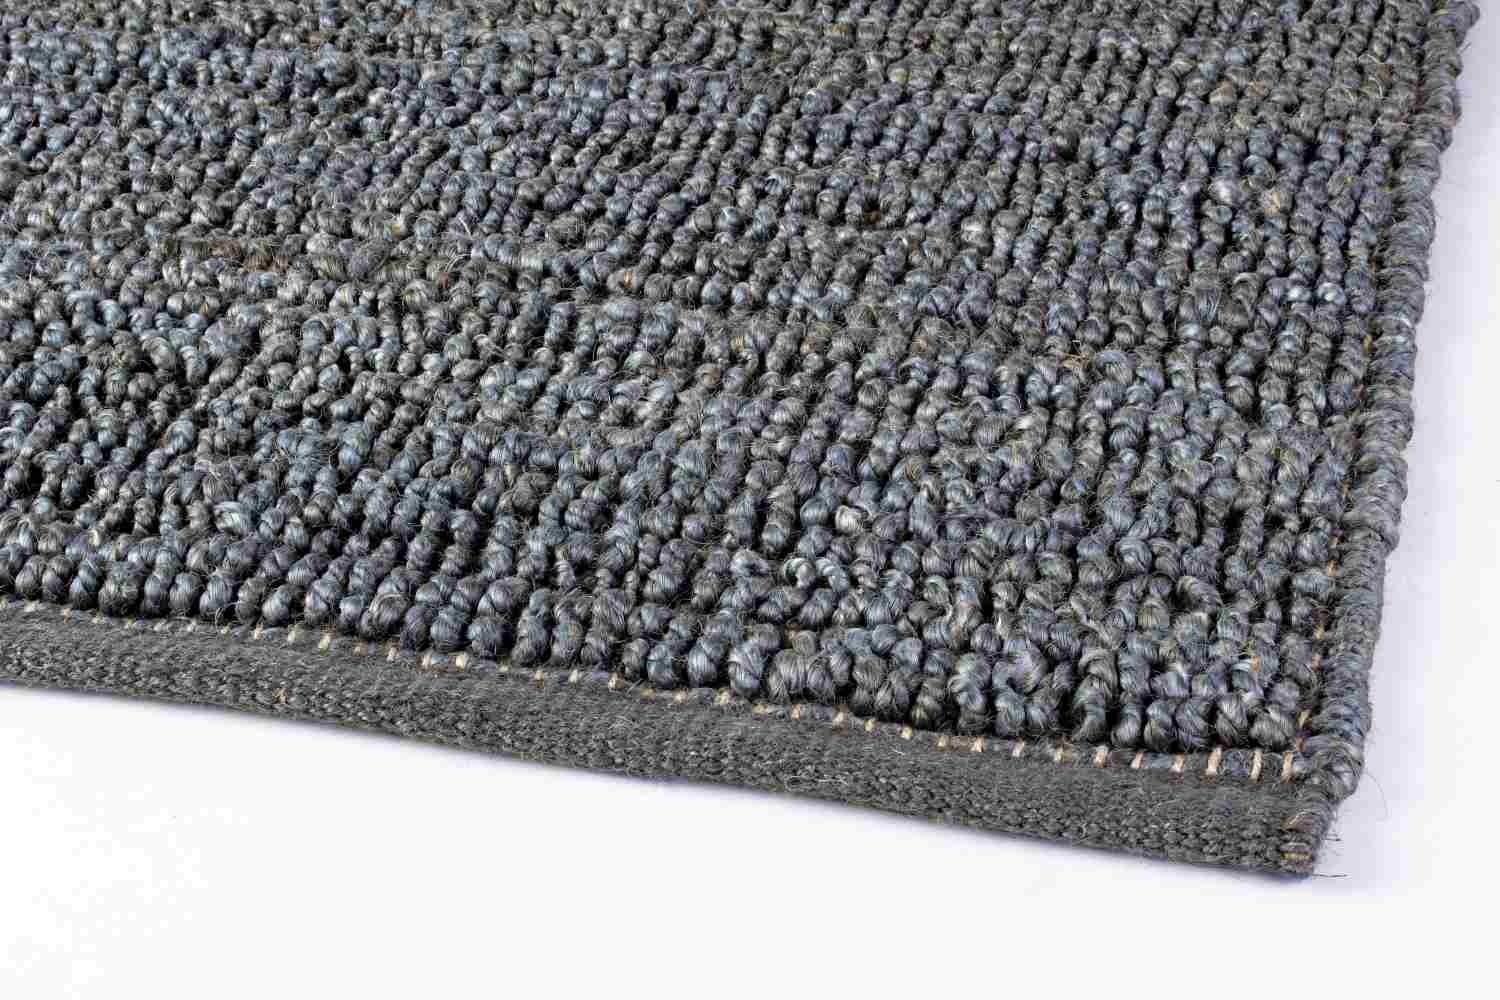 Der Teppich Zanzibar überzeugt mit seinem klassischen Design. Gefertigt wurde er aus 100% Jute. Der Teppich besitzt einen blauen Farbton und die Maße von 170x240 cm.